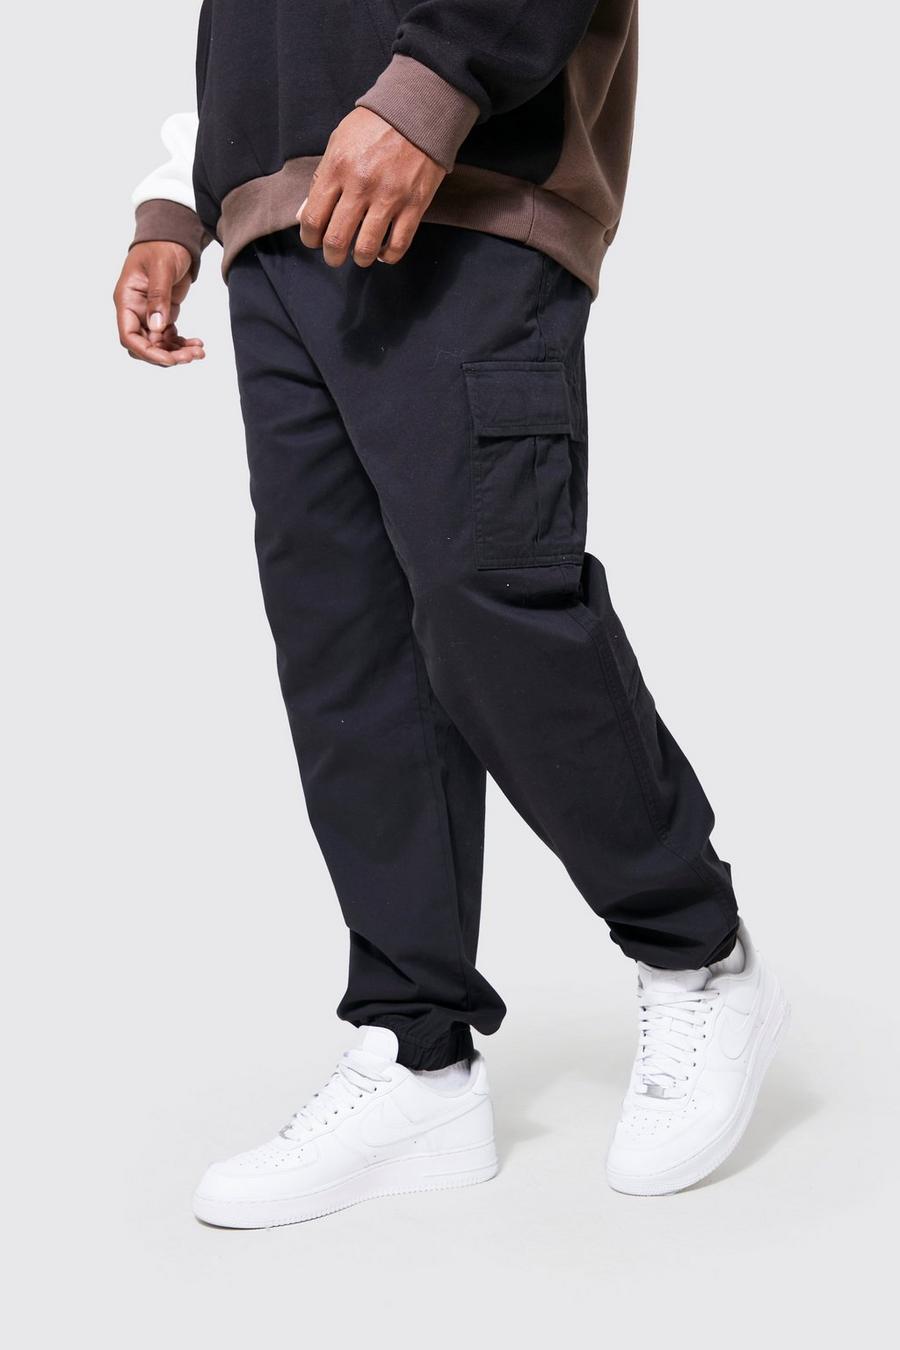 Pantalón Plus cargo ajustado, Black nero